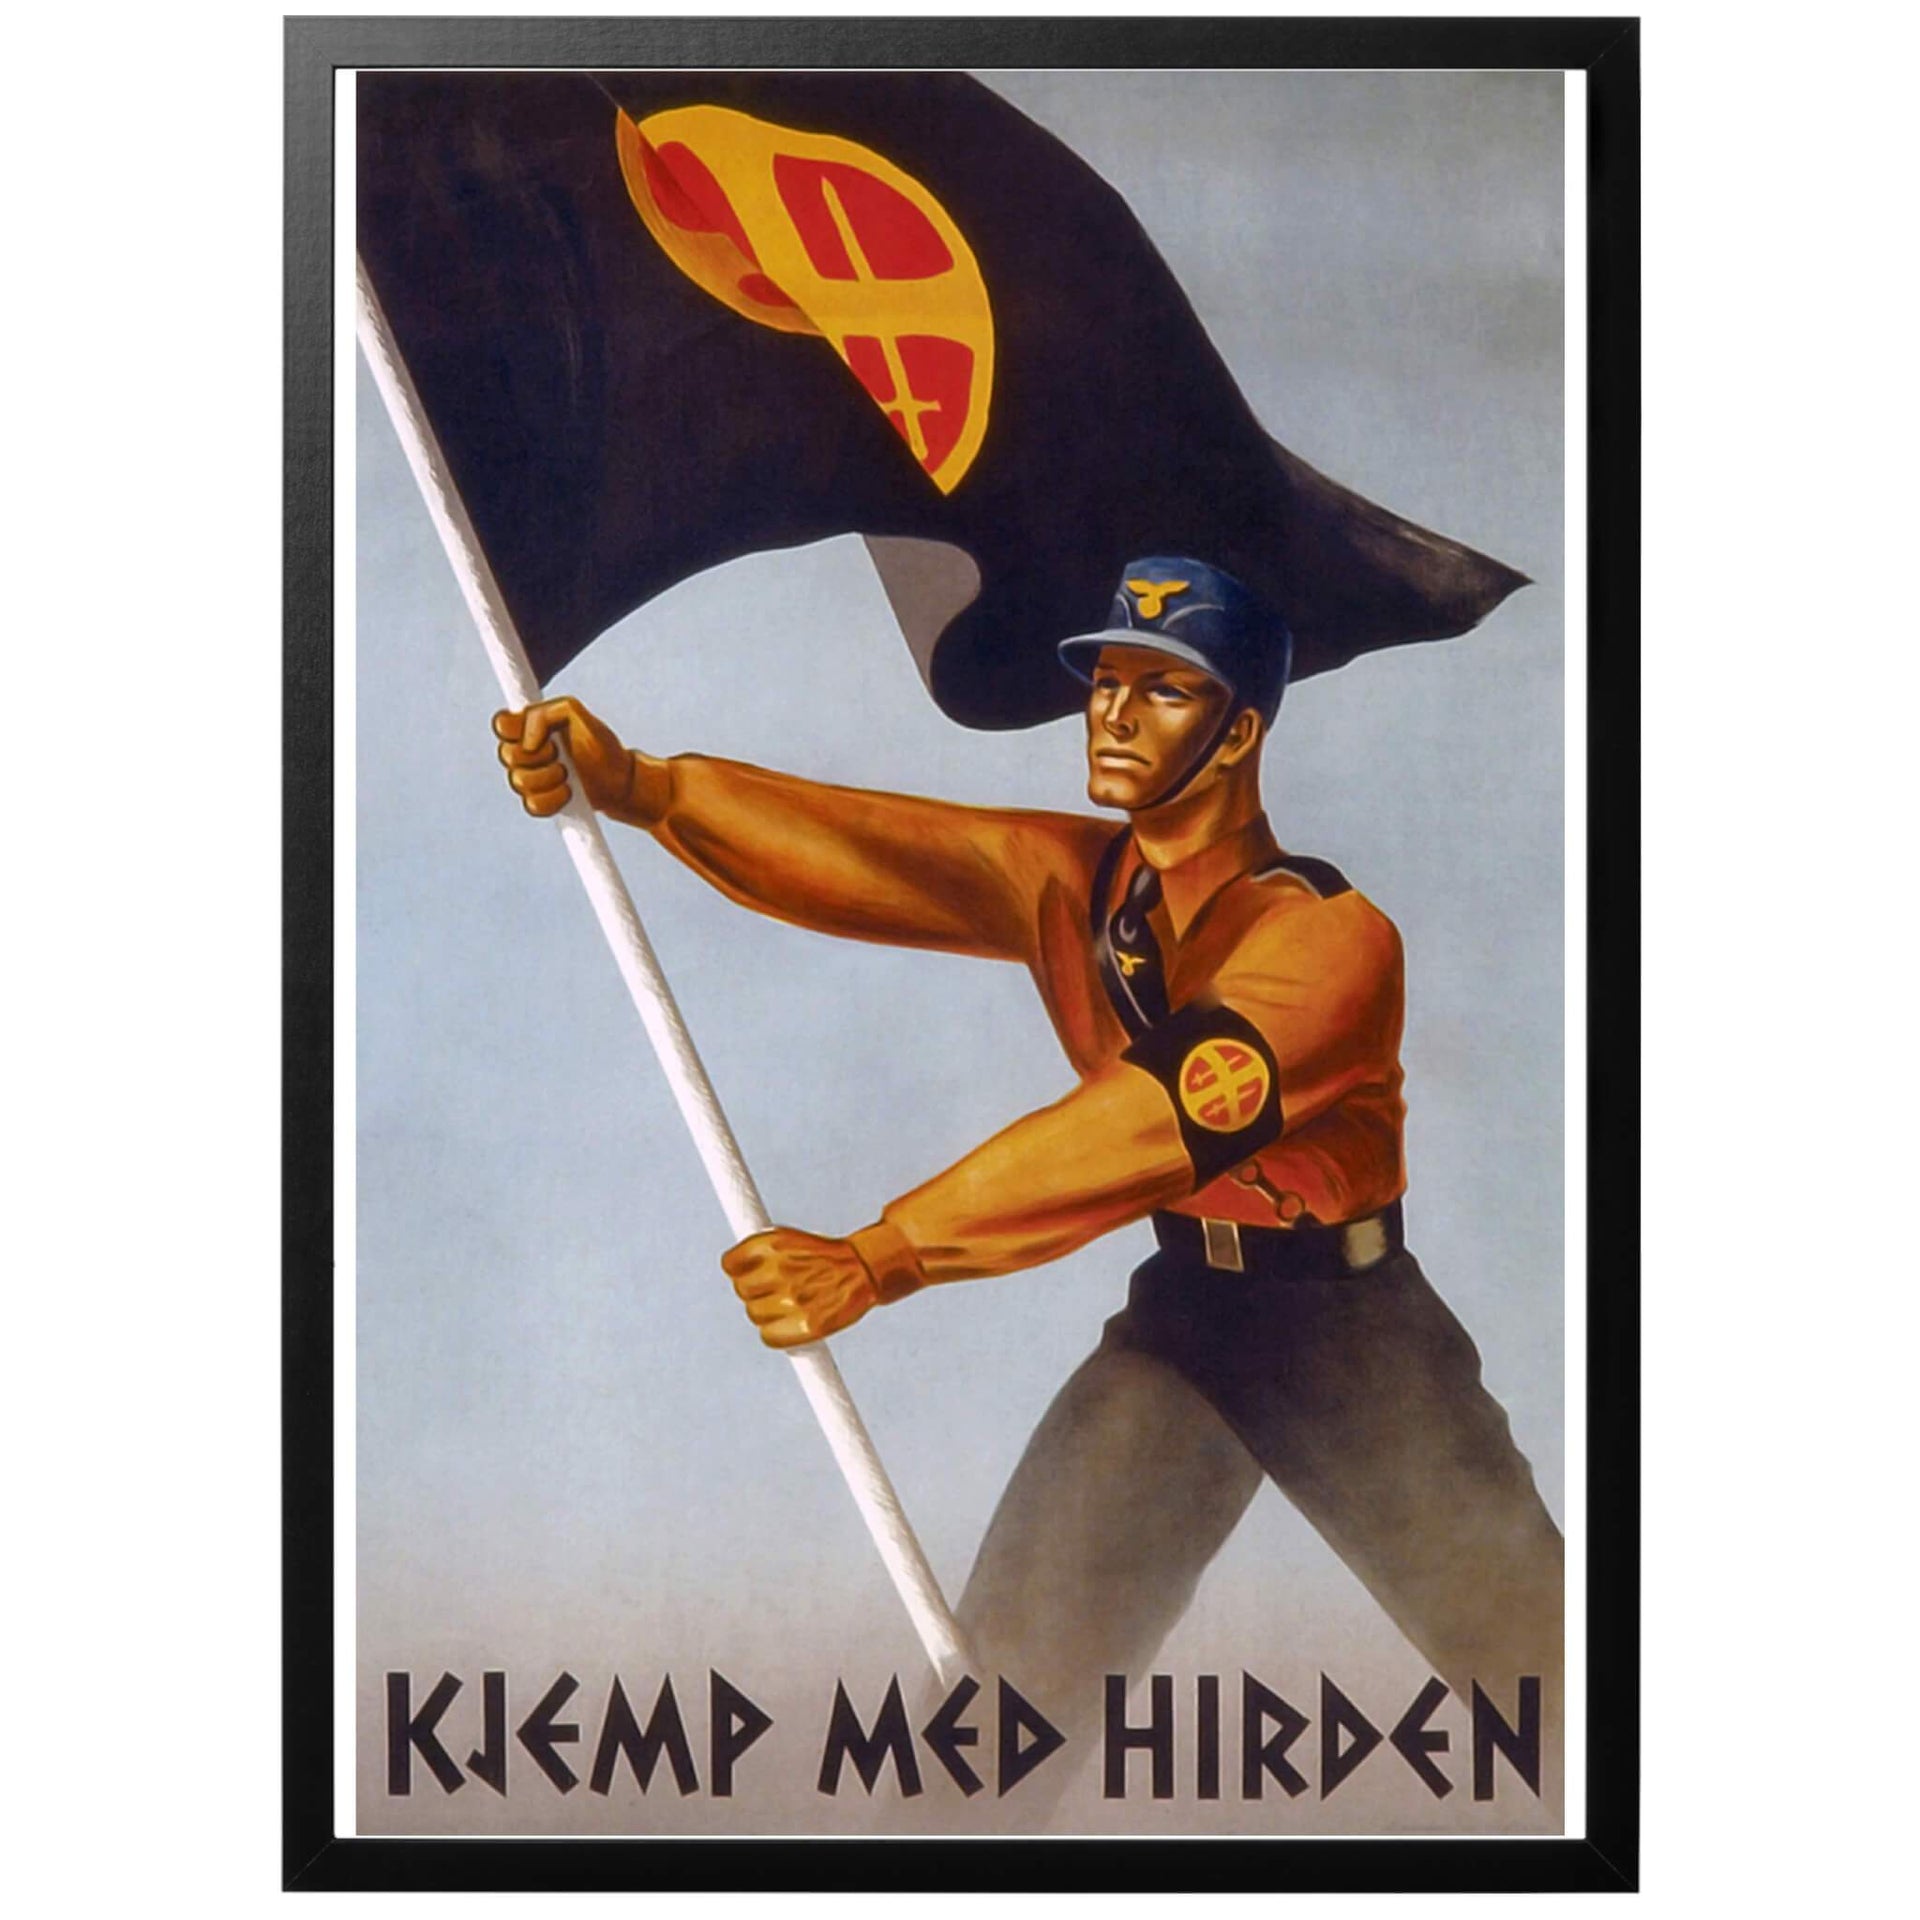 Kjemp med Hirden - Kämpa med Hirden - Norsk WWII affisch från 1942 av Harald Damsleth. Norsk propagandaposter för det styrande partiet Nasjonal Samling. Hirden var partiets stormtrupp, liknande det tyska SA. Ordet hird är fornnordiskt och betyder krigare, ofta i tjänst för kungen.